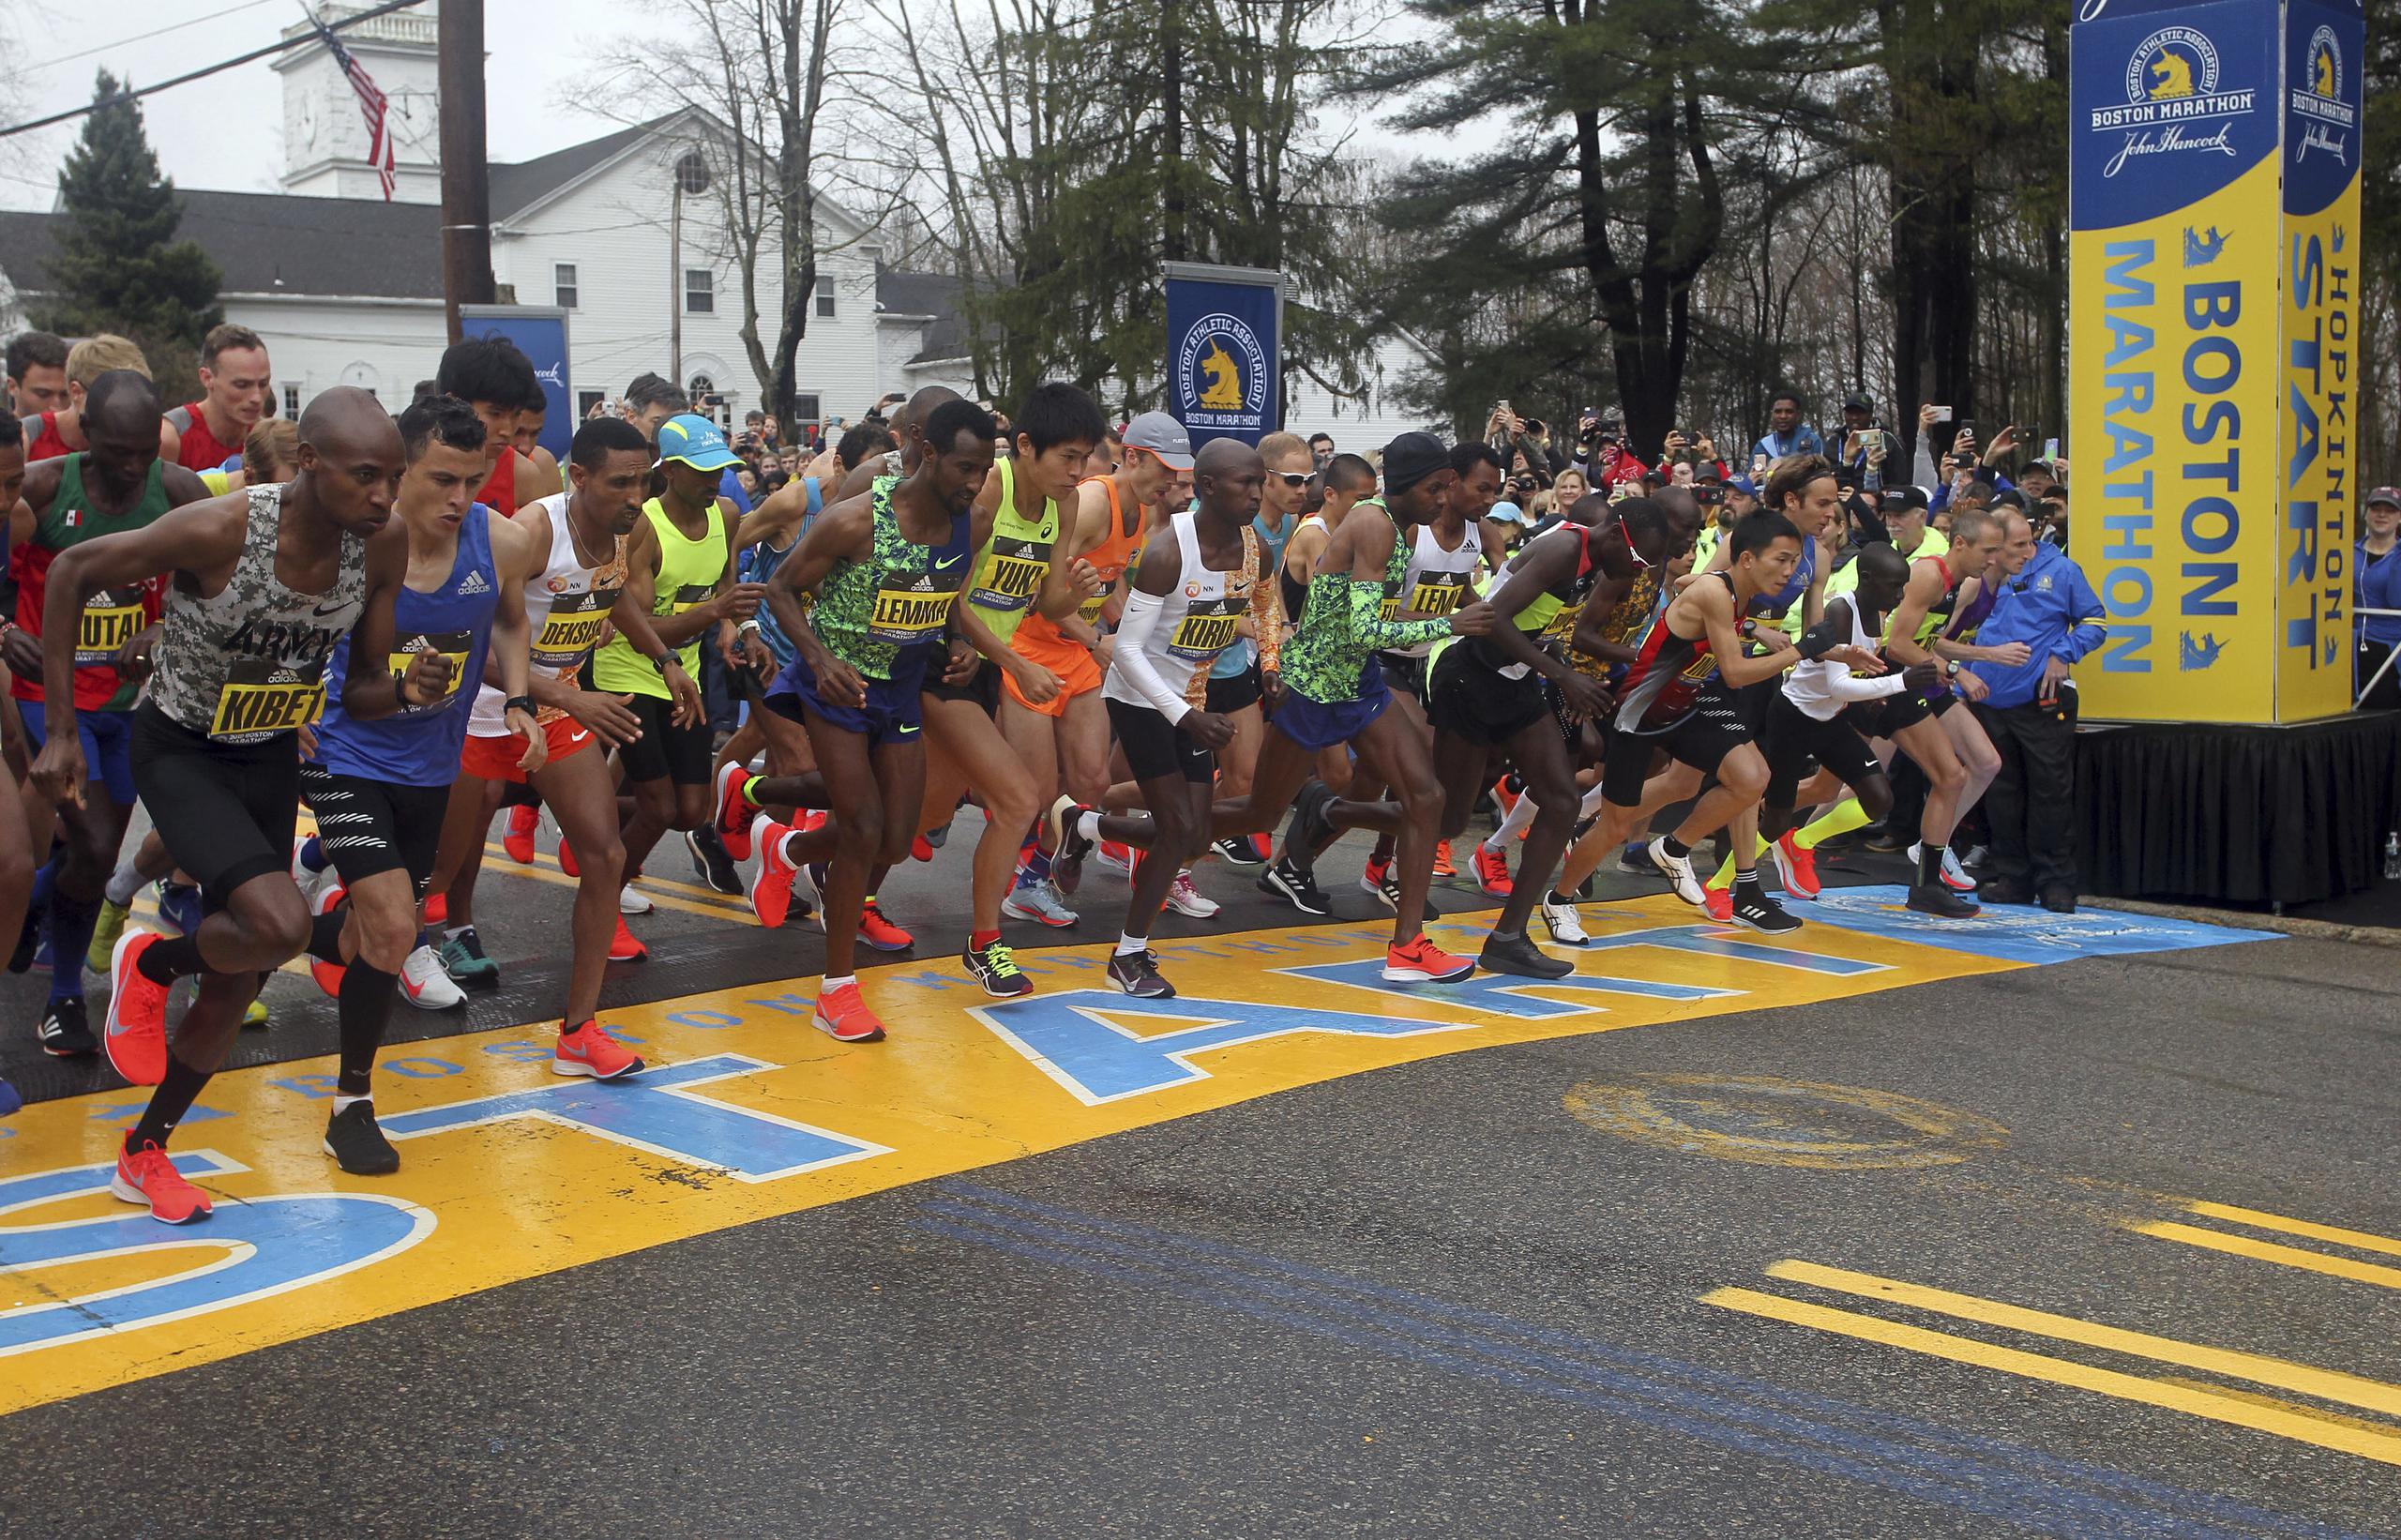 La edición del 2021 del Maratón de Boston está programada para el 19 de abril.